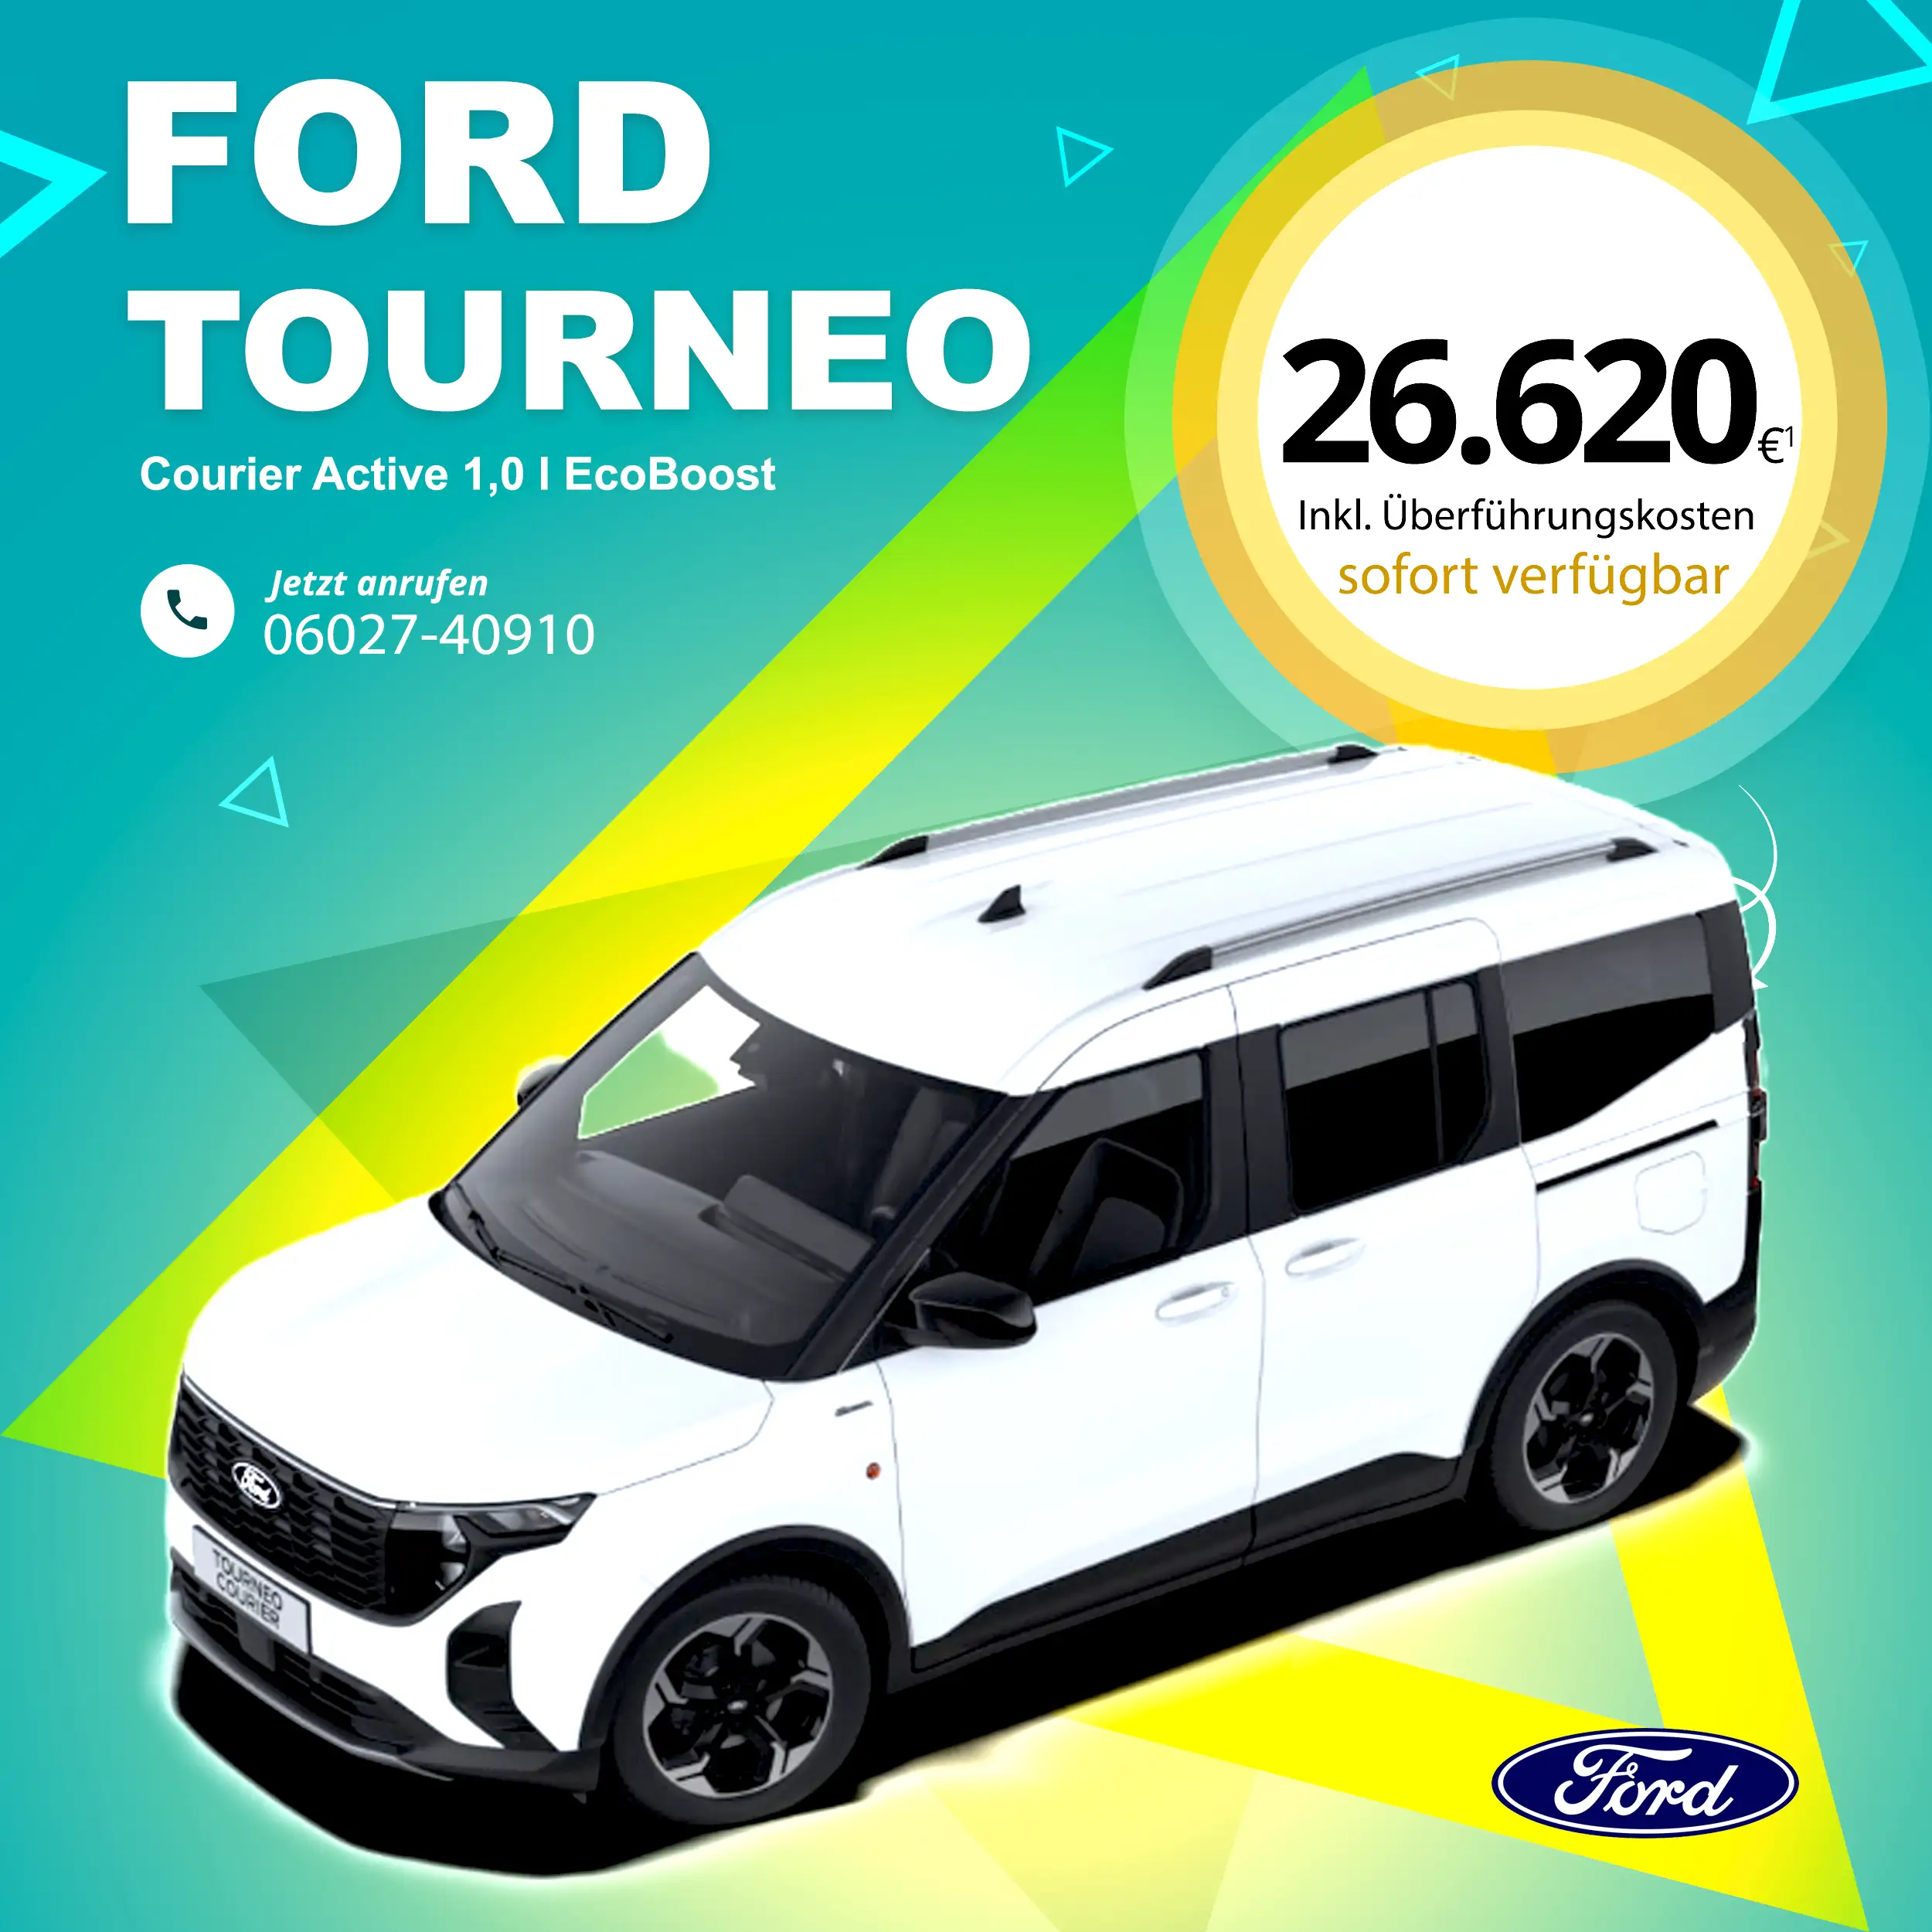 Ford Tourneo Courier Active inkl. Überführungskosten beim Ford Händler in Kleinostheim - Auto Centrum Stange